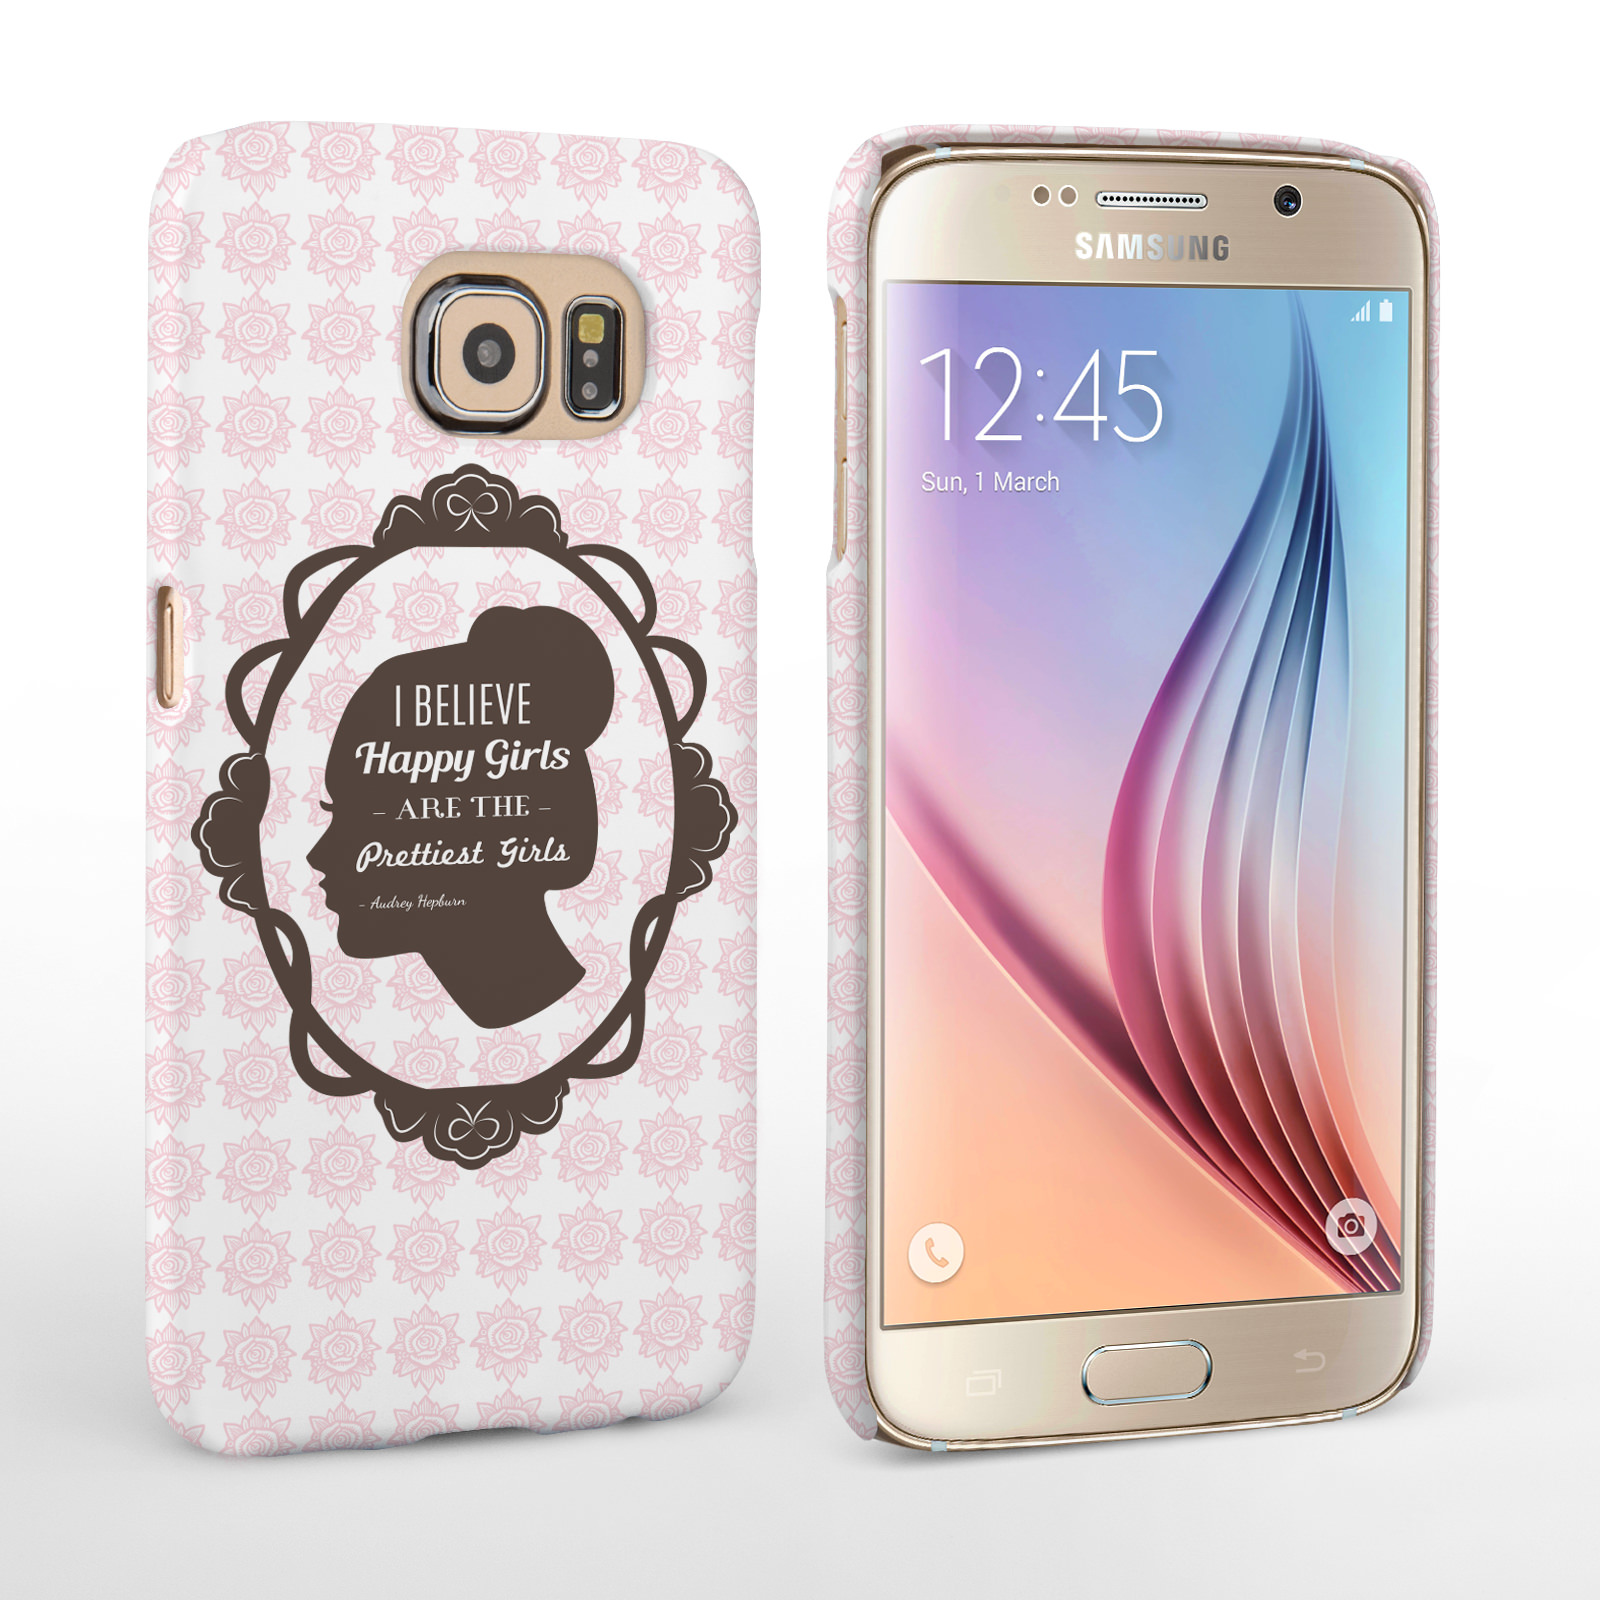 Caseflex Samsung Galaxy S6 Audrey Hepburn ‘Happy Girls’ Quote Case